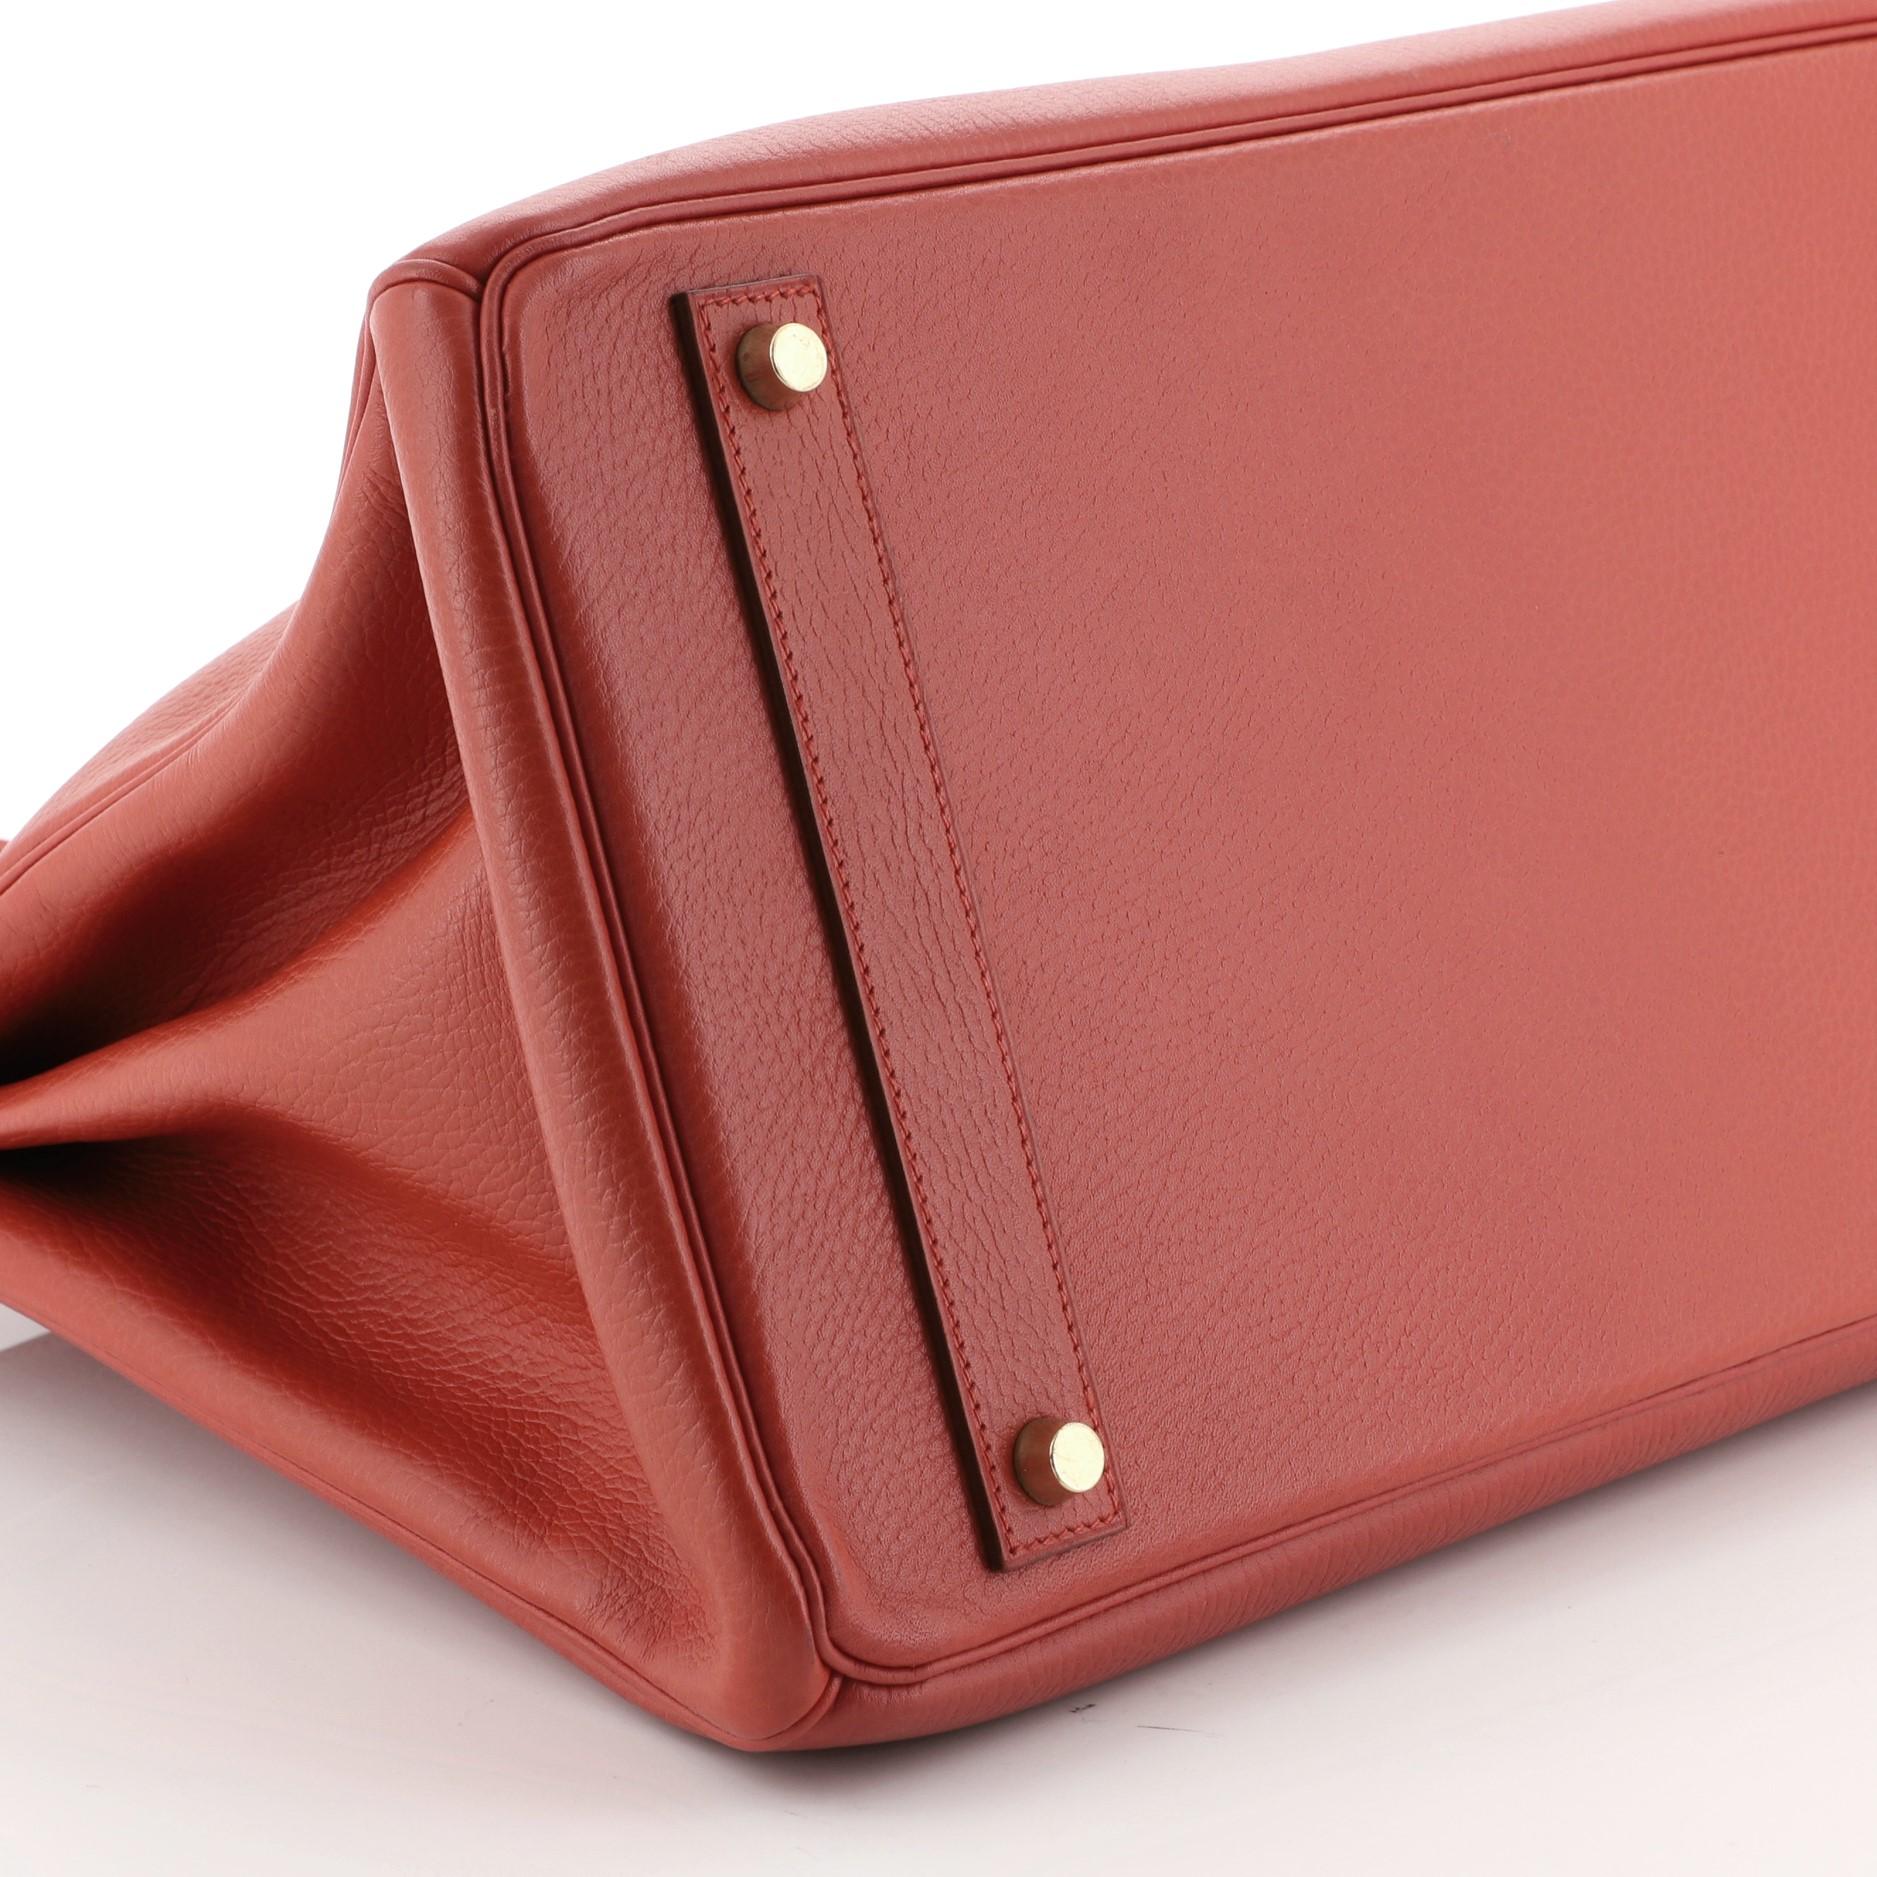 Birkin Handbag Red Ardennes with Gold Hardware 40 2